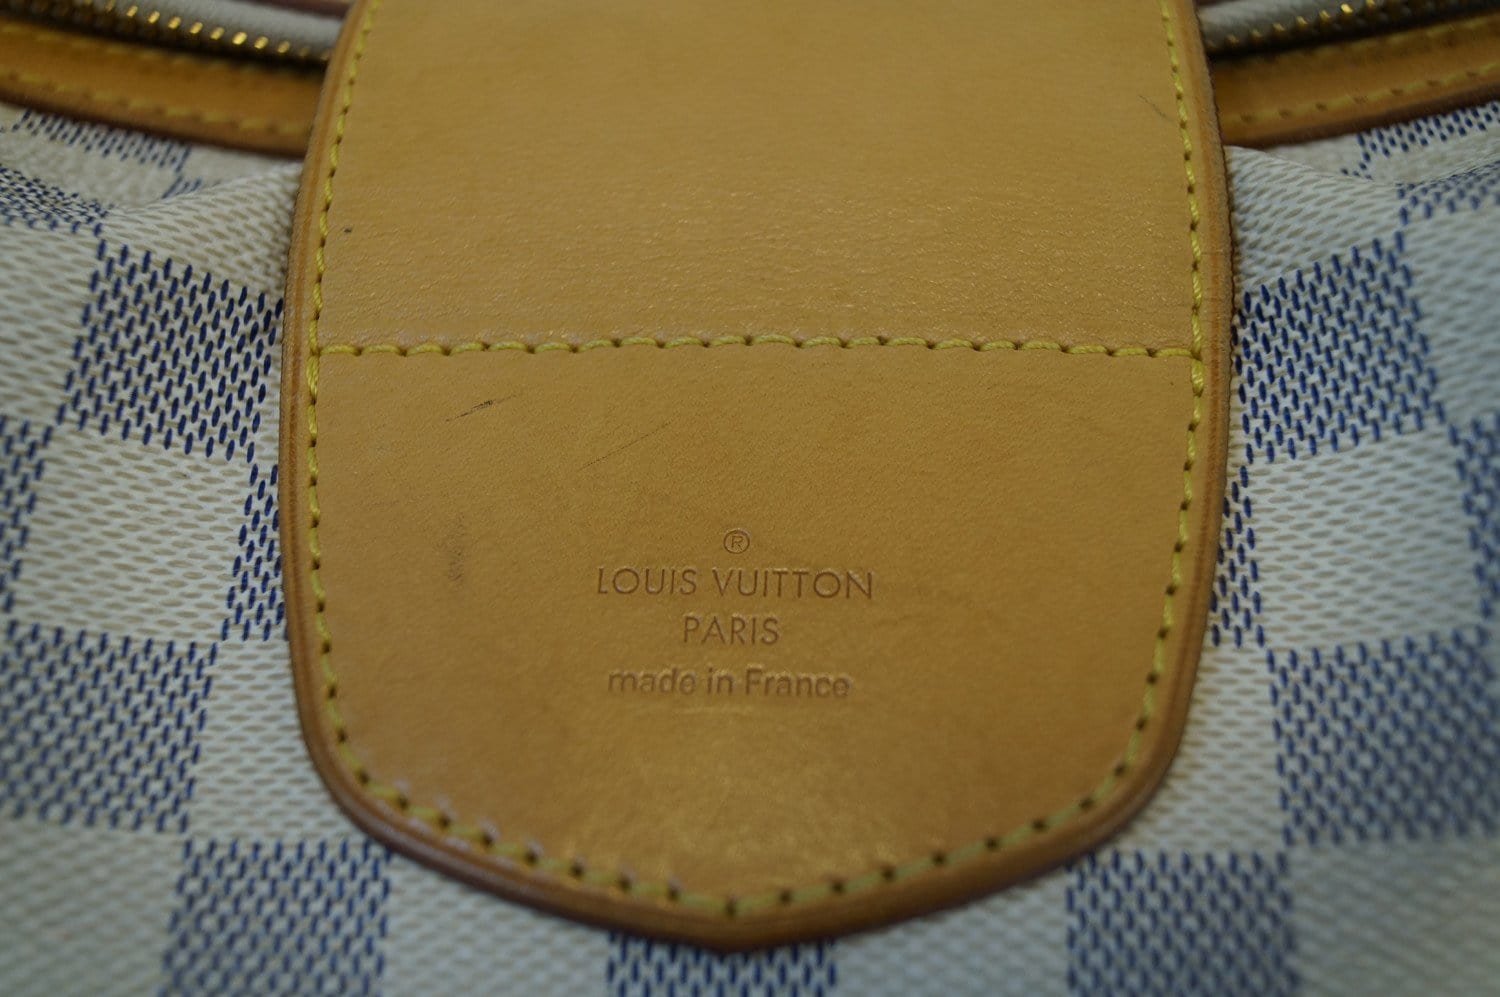 Louis Vuitton Stresa – The Brand Collector